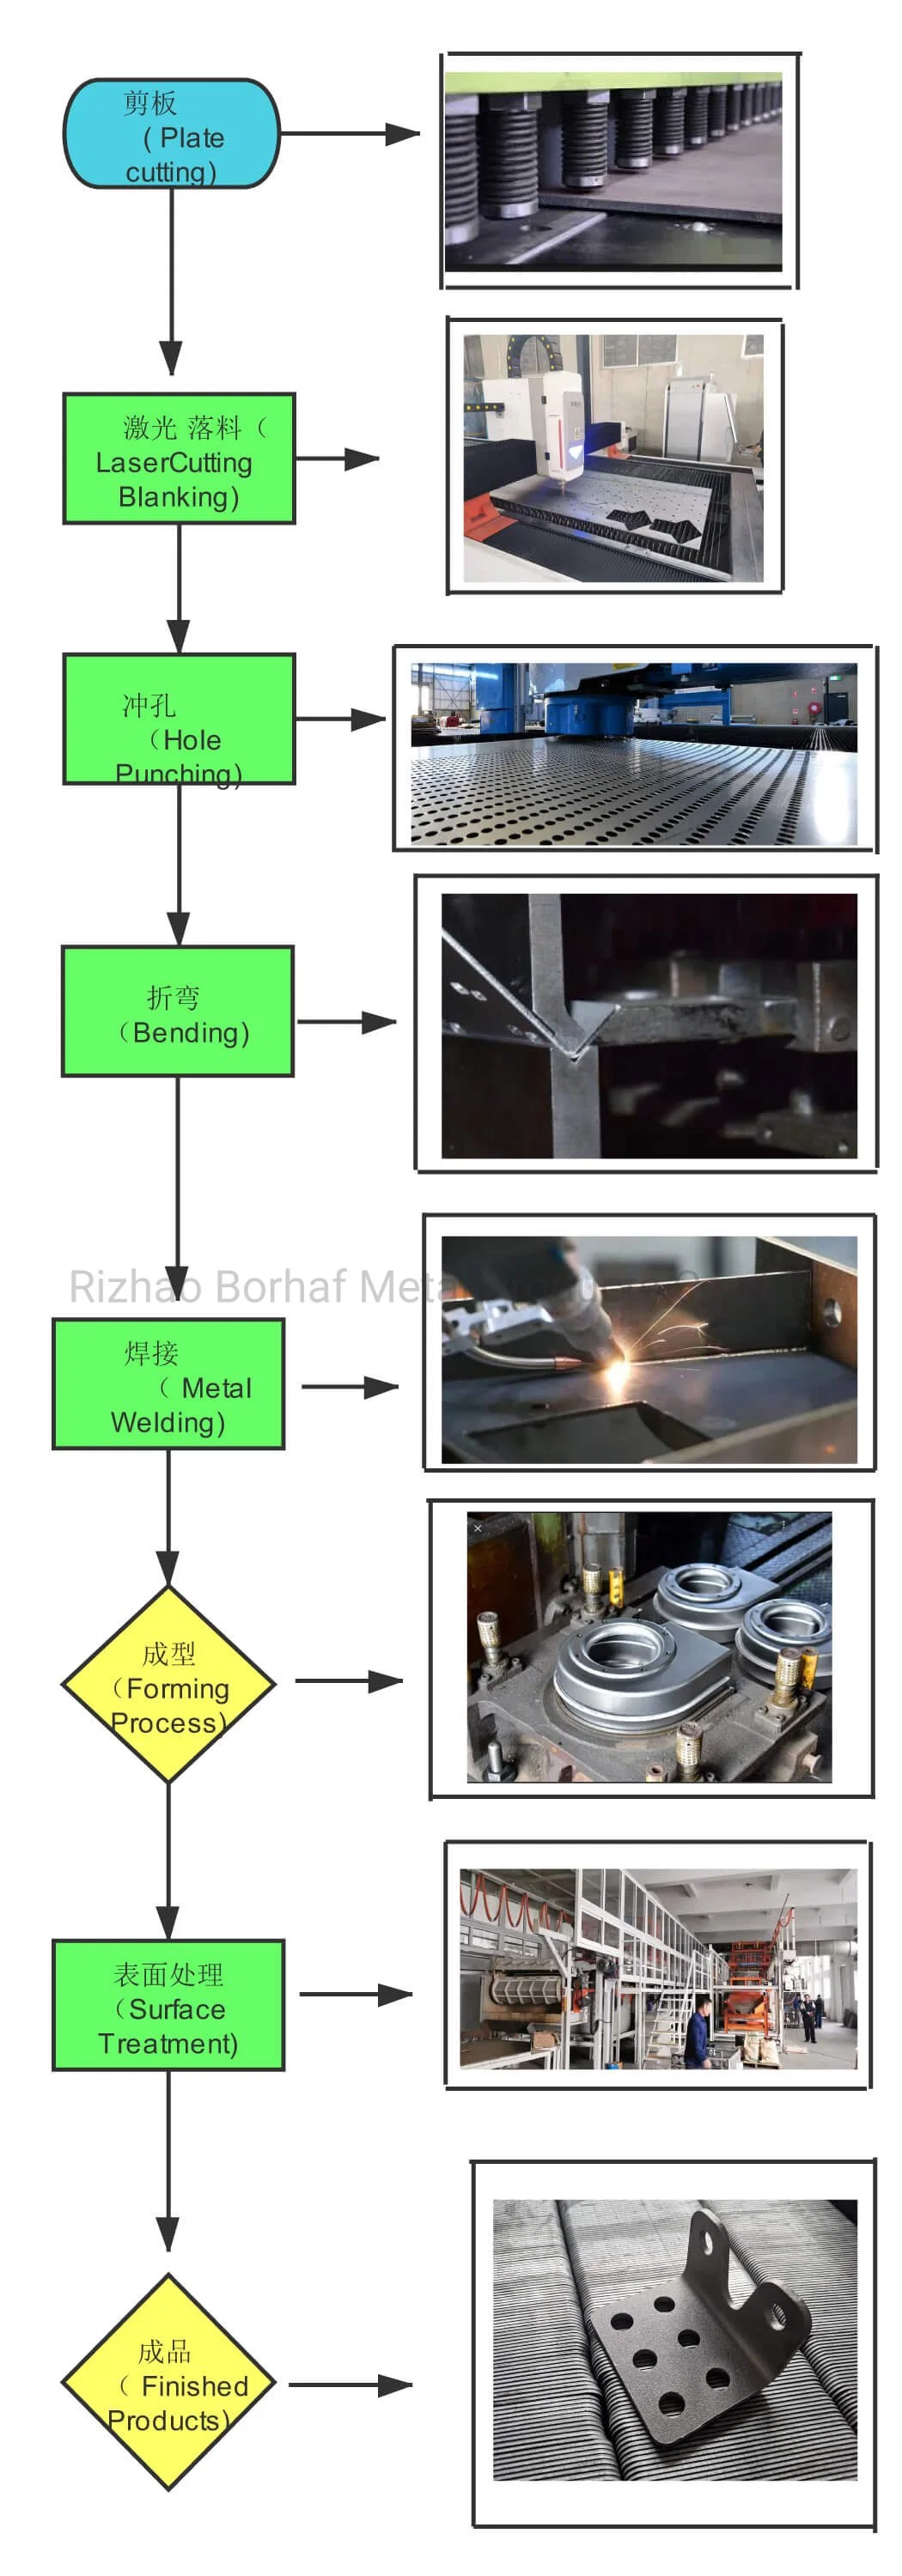 Basic Customization Punching Parts, Stamping Sheet Metal Punching Stainless Steel Customized Punching Sample Customization